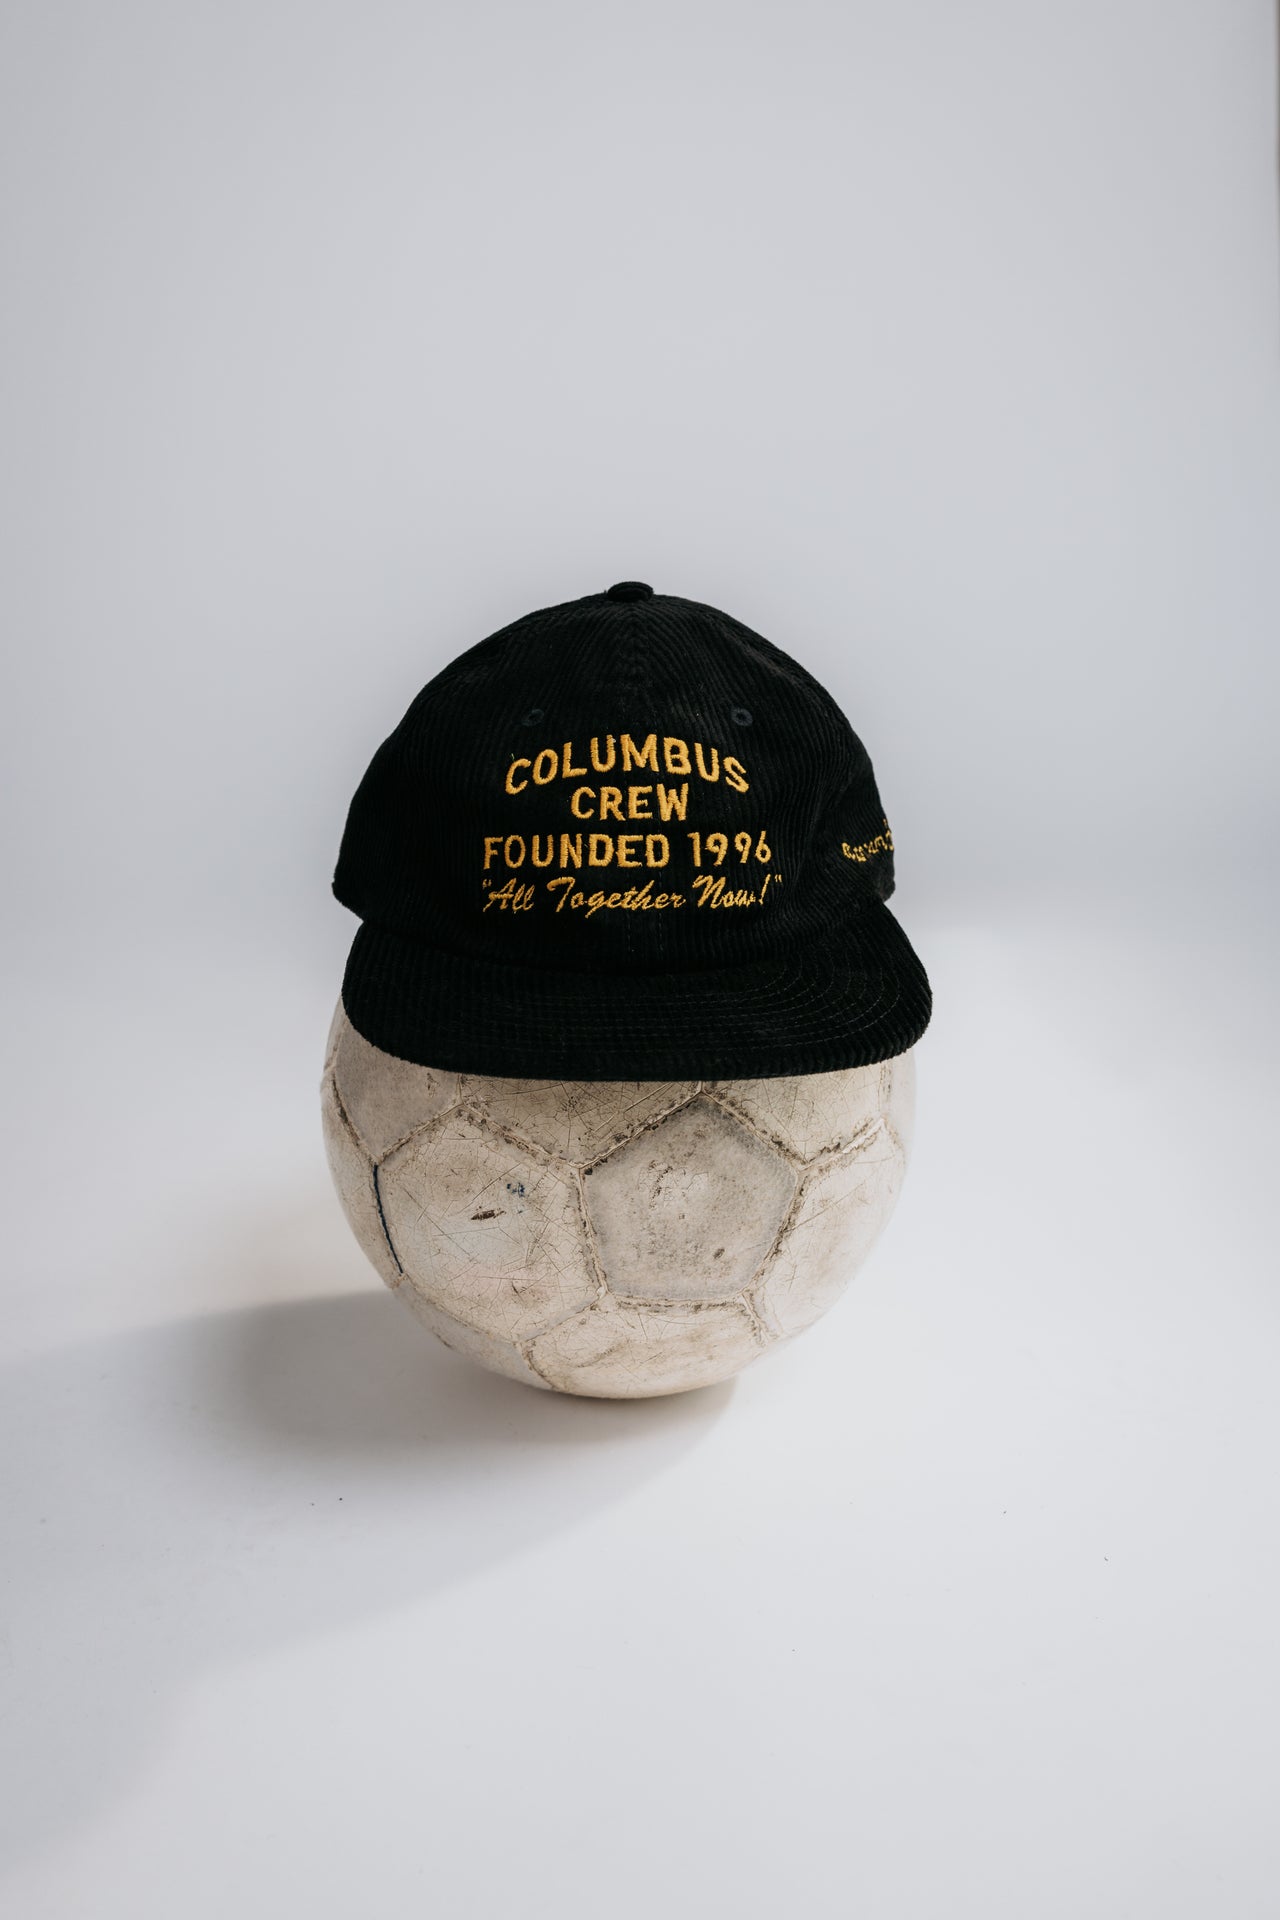 Corduroy Columbus Crew Founded 1996 Hat